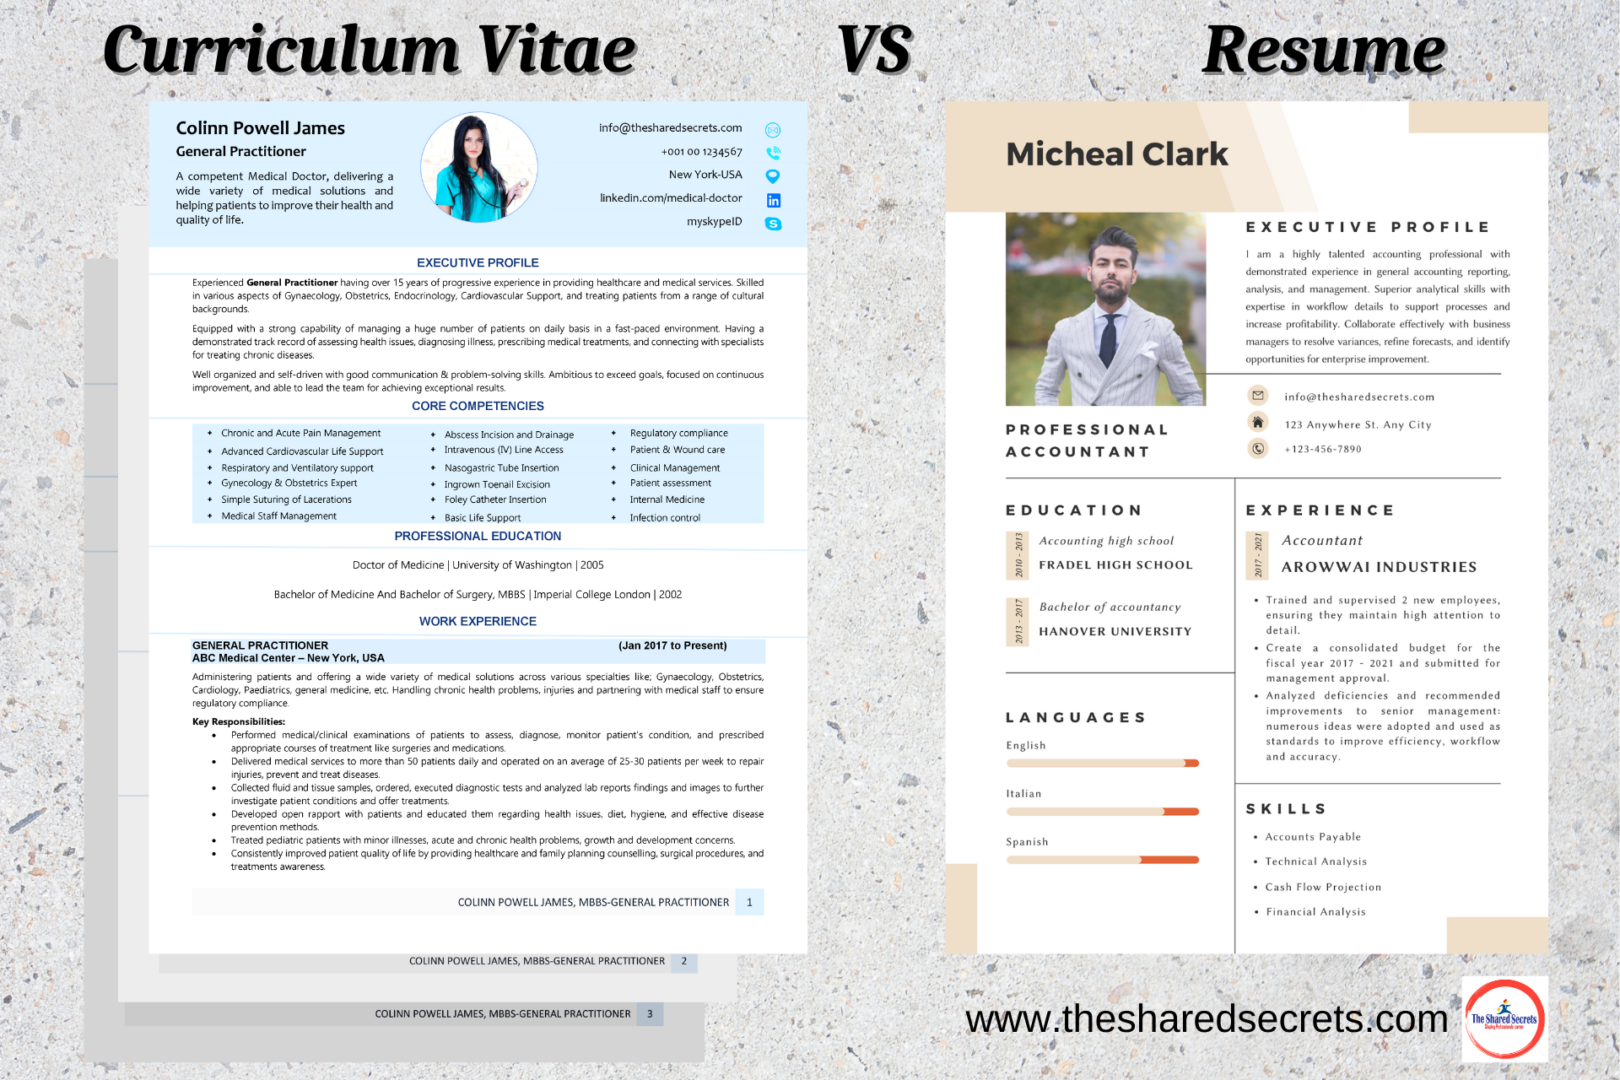 Curriculum Vitae VS Resume